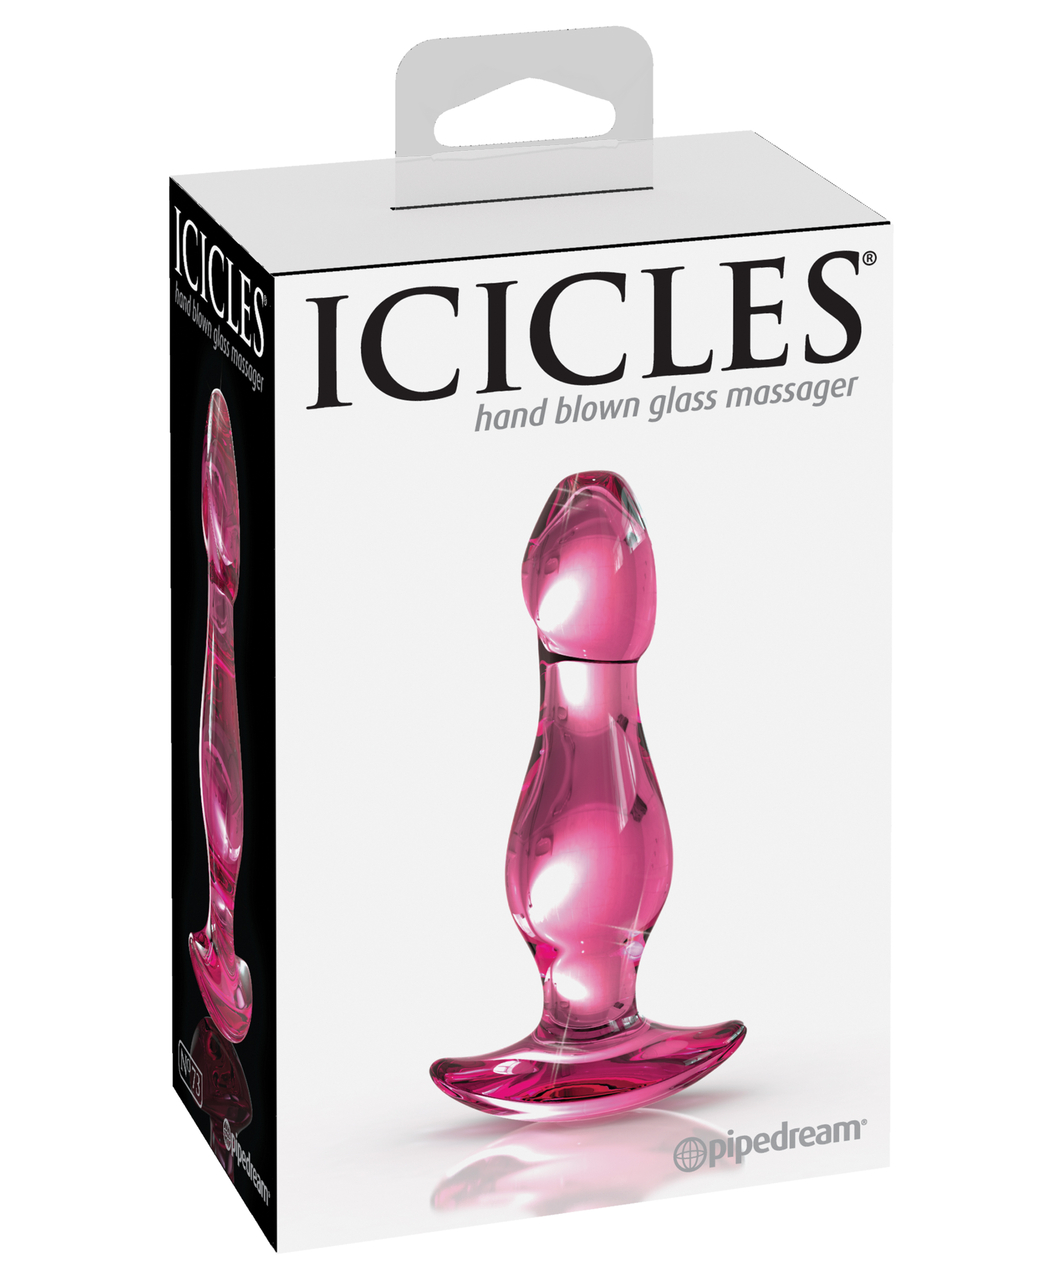 Icicles No. 73 glass butt plug